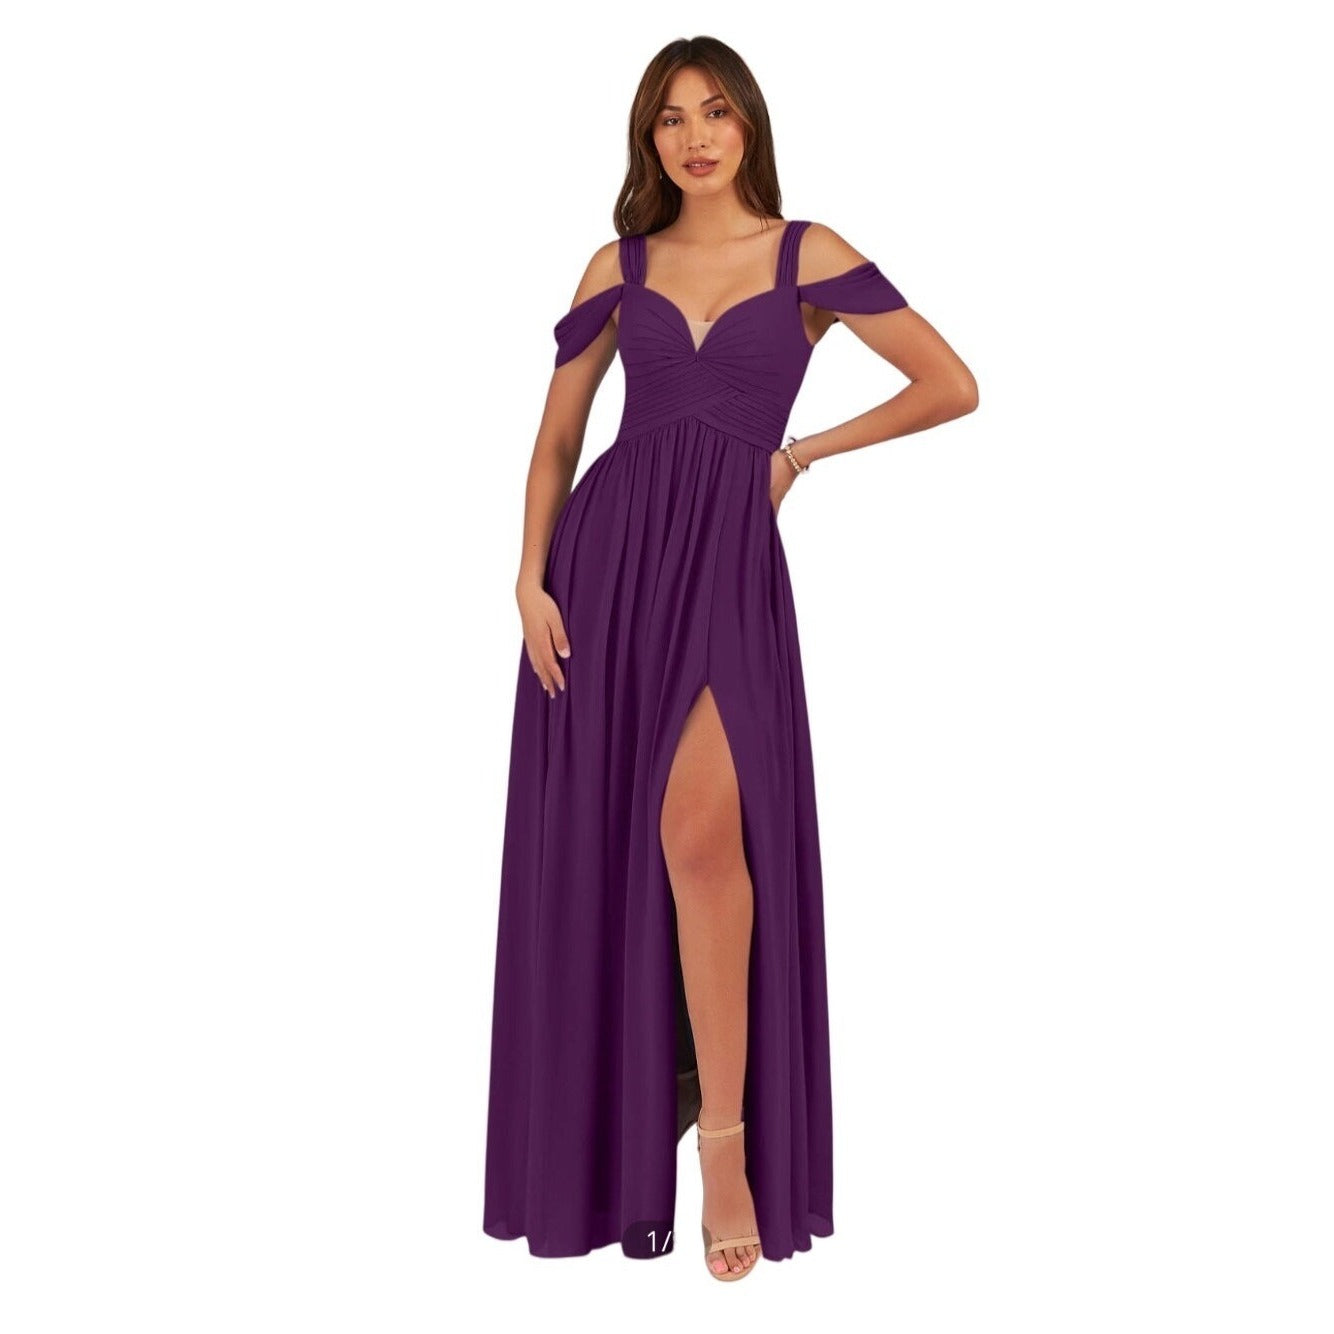 Azazie Lianne Purple Chiffon Special Occasion Dress